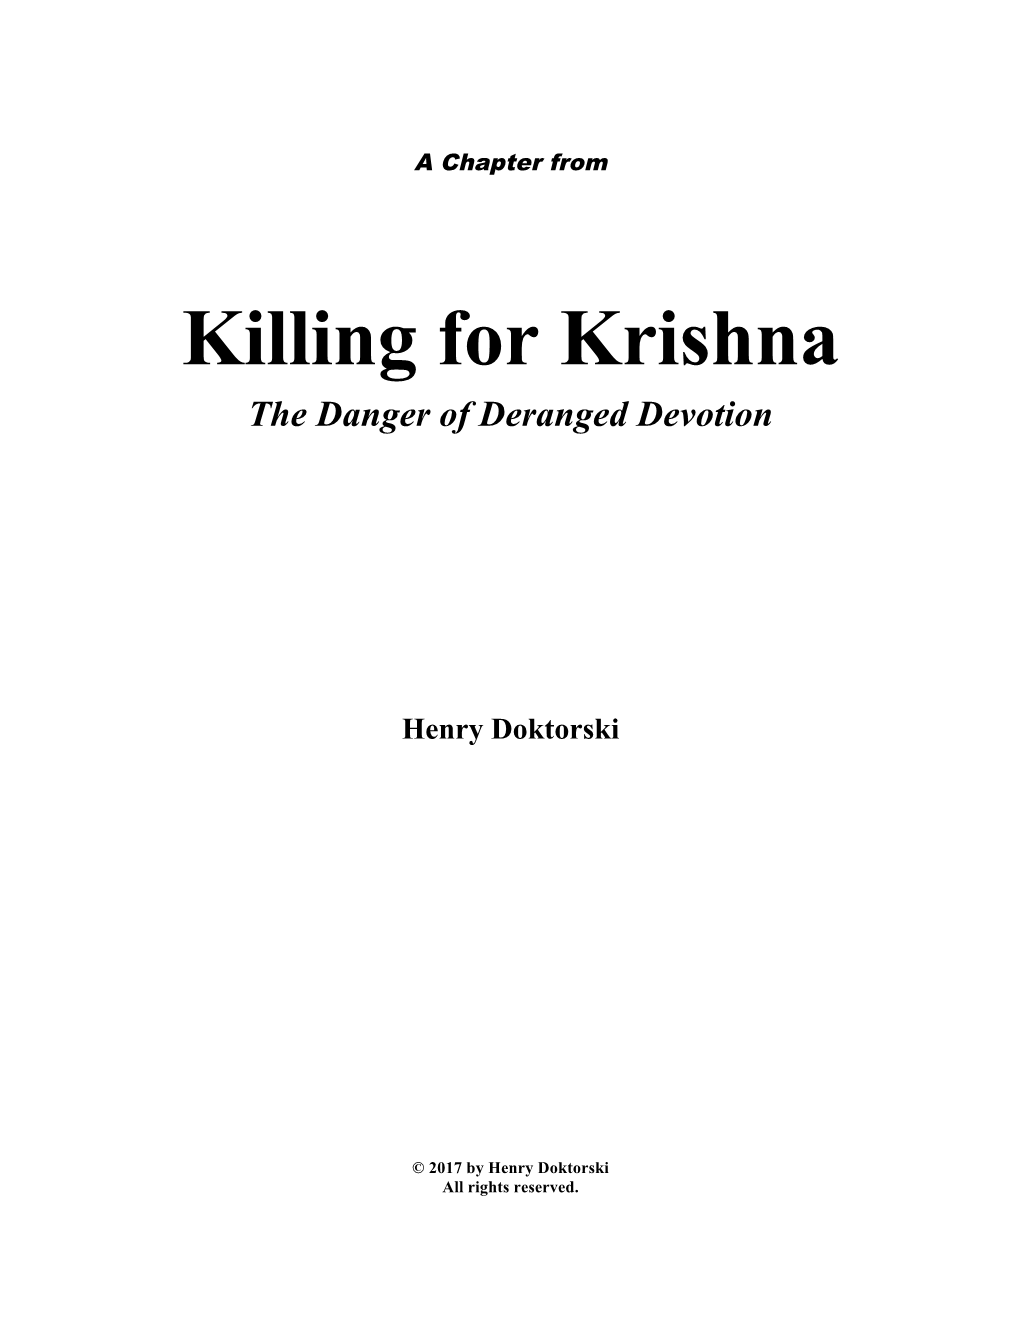 Killing for Krishna the Danger of Deranged Devotion